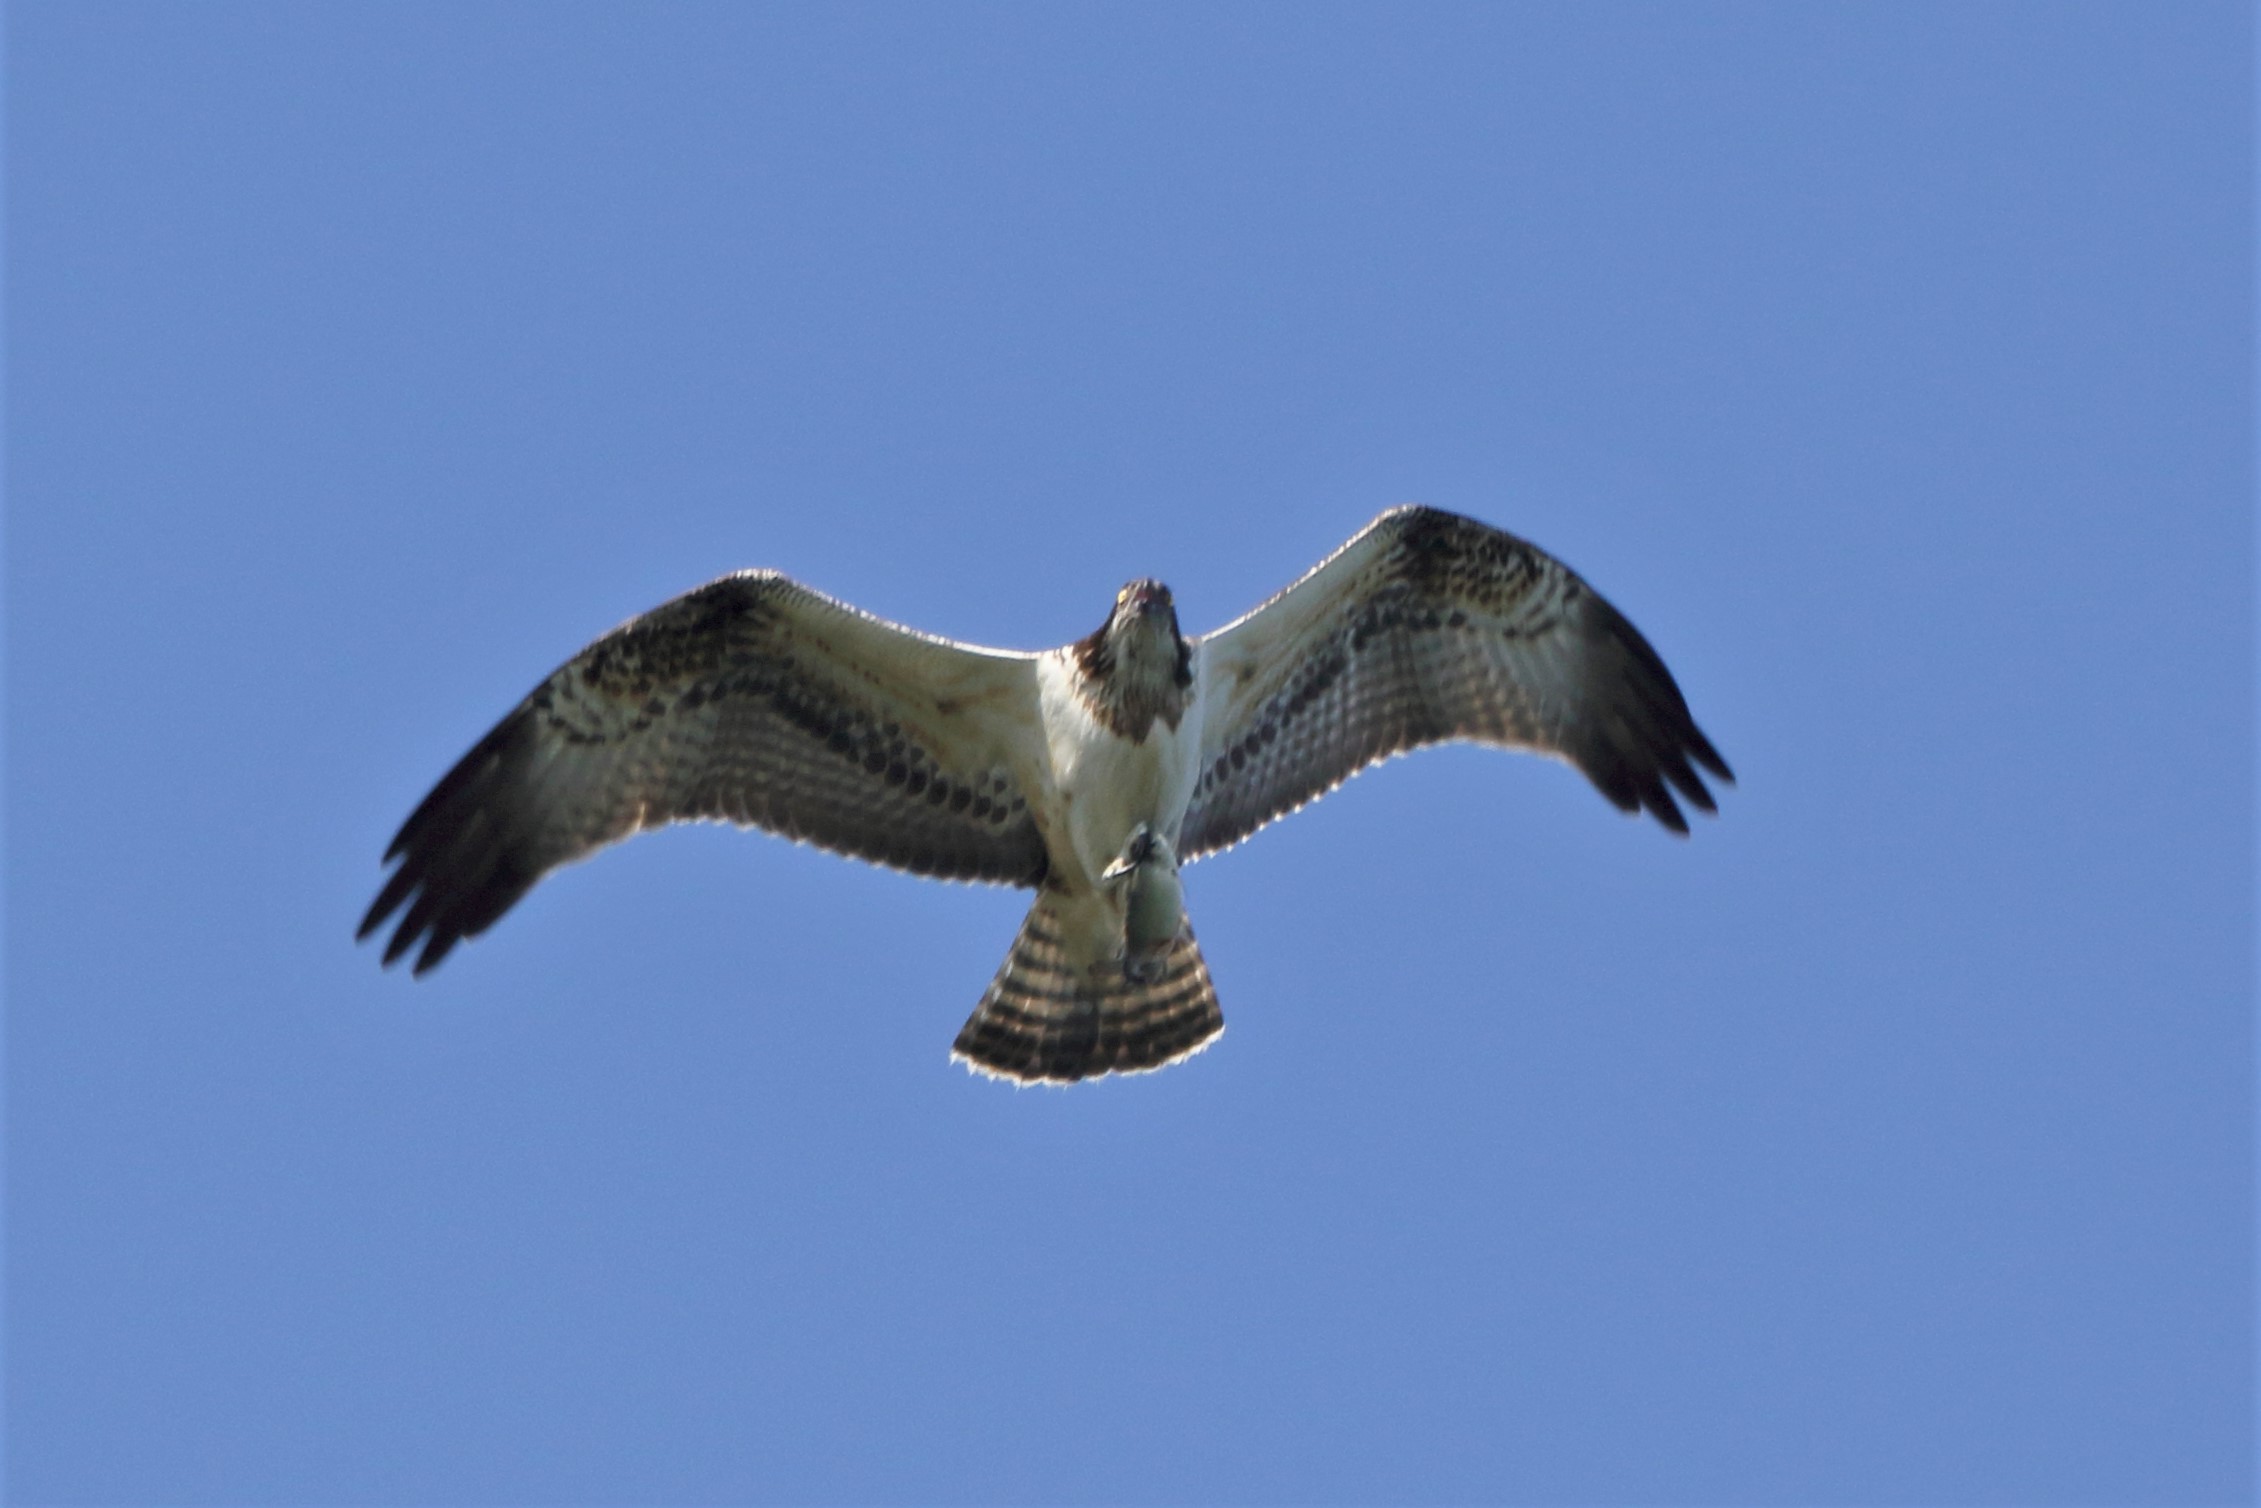  Osprey with prey 248...